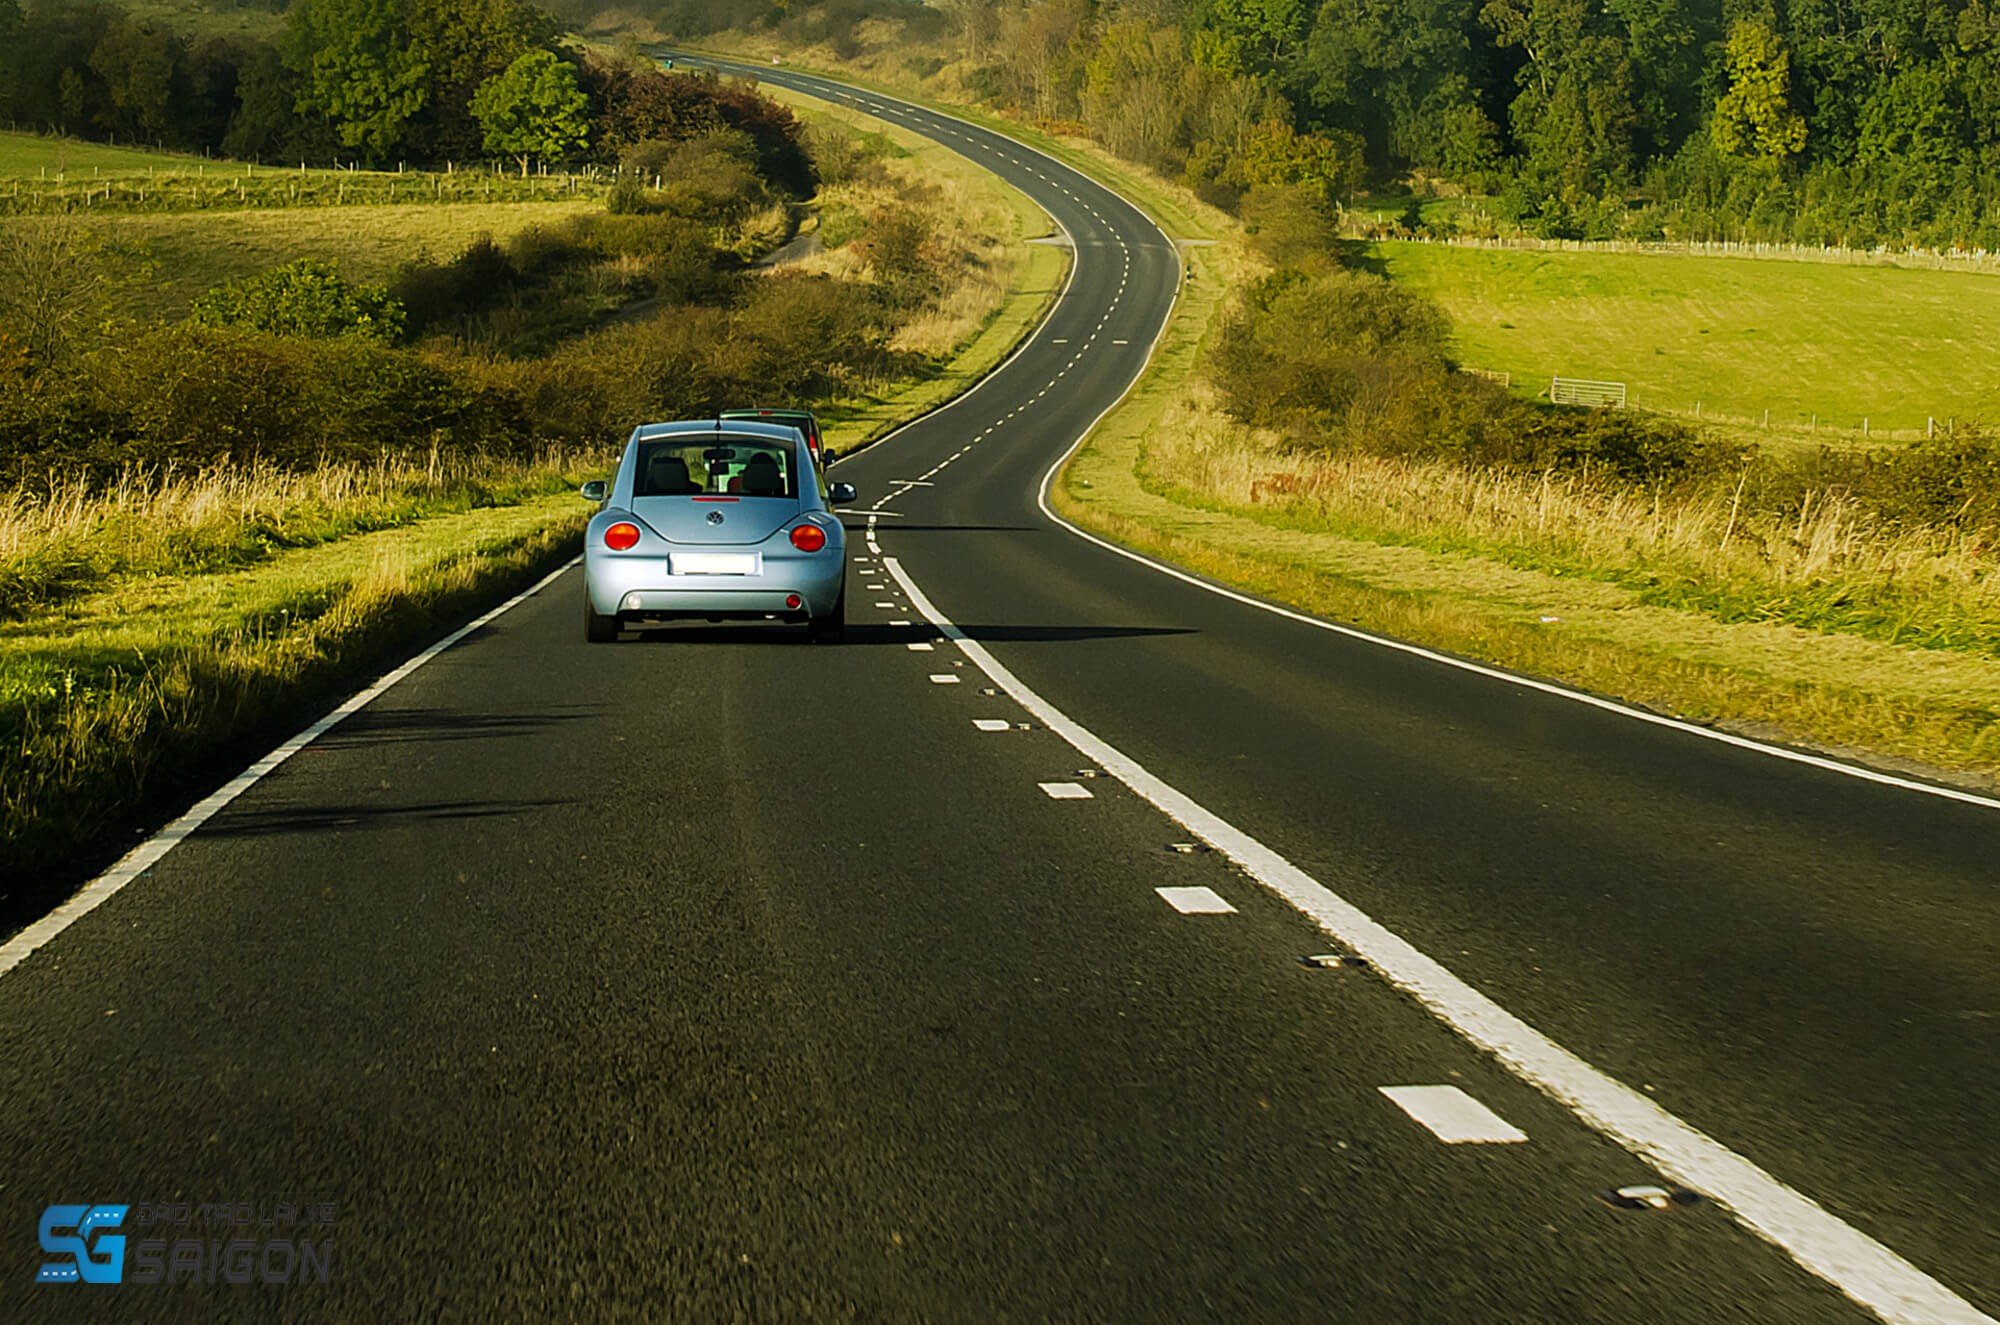 Học lái xe ô tô B2 là cả một chặng đường. Hãy cẩn thận trong việc lựa chọn bạn đồng hành cho đọan đường đó ngay từ vạch xuất phát.